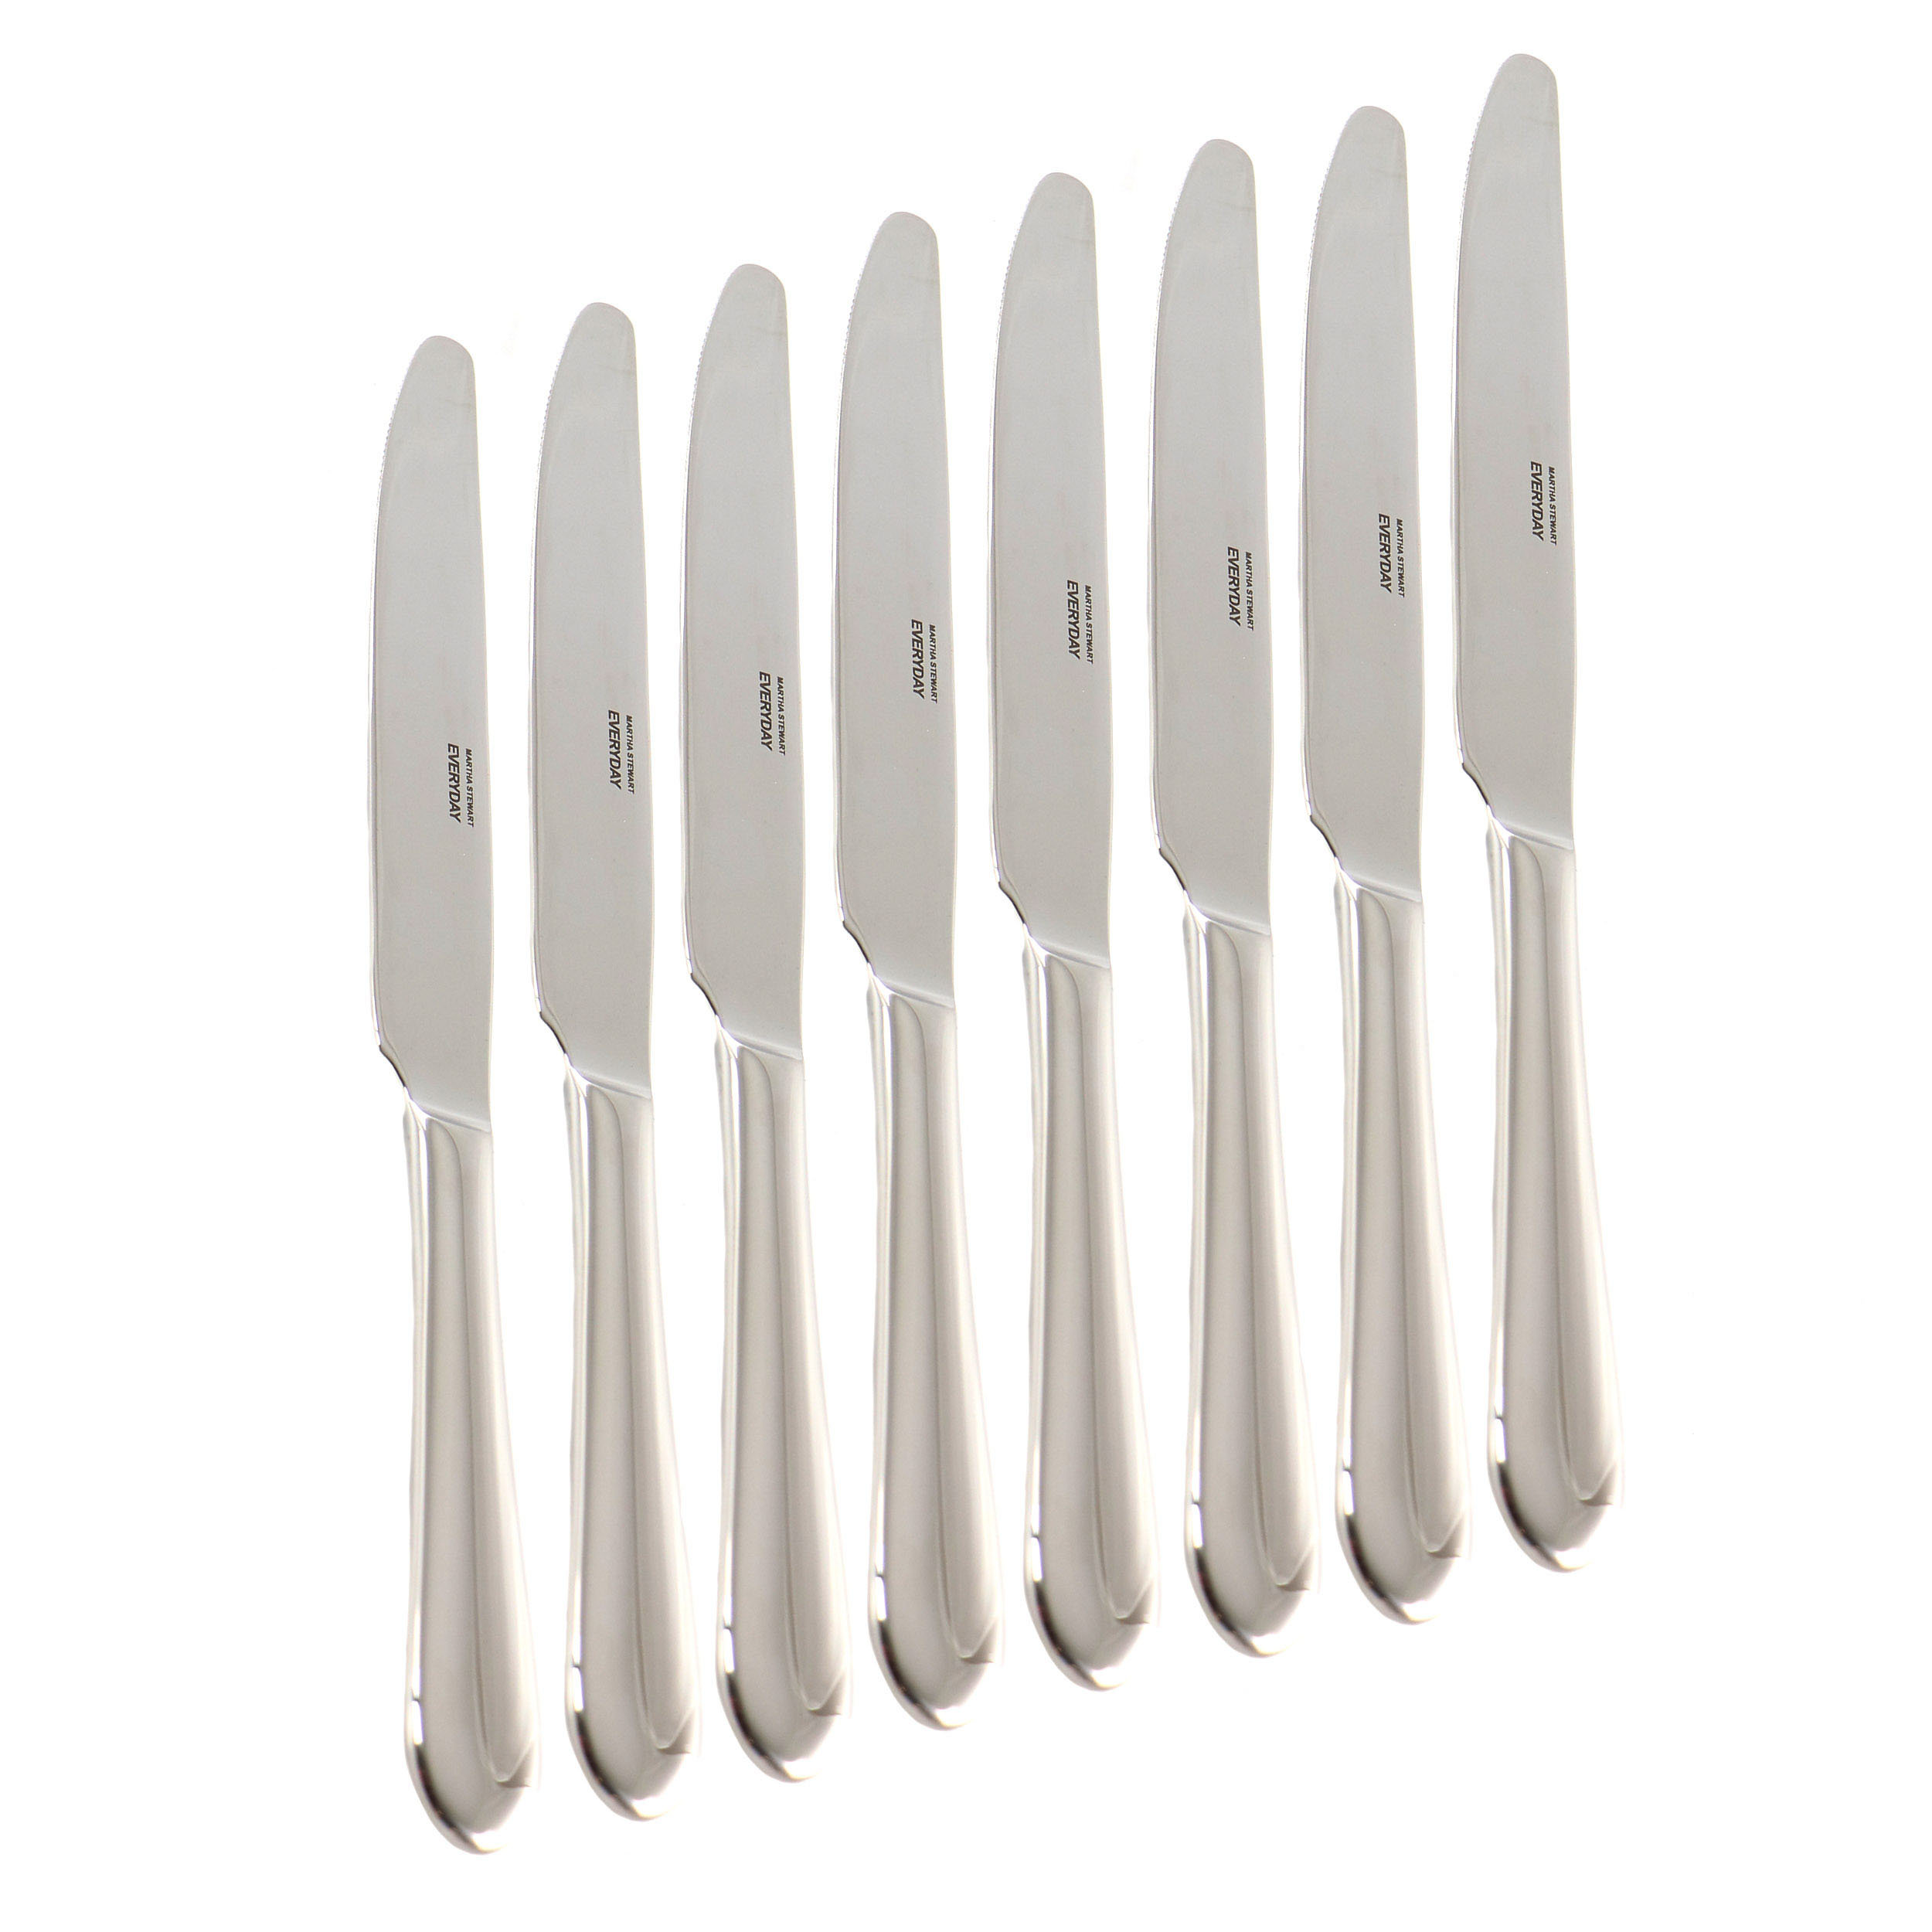 https://assets.wfcdn.com/im/01870285/compr-r85/2413/241395355/8-piece-stainless-steel-dinner-knife-set.jpg